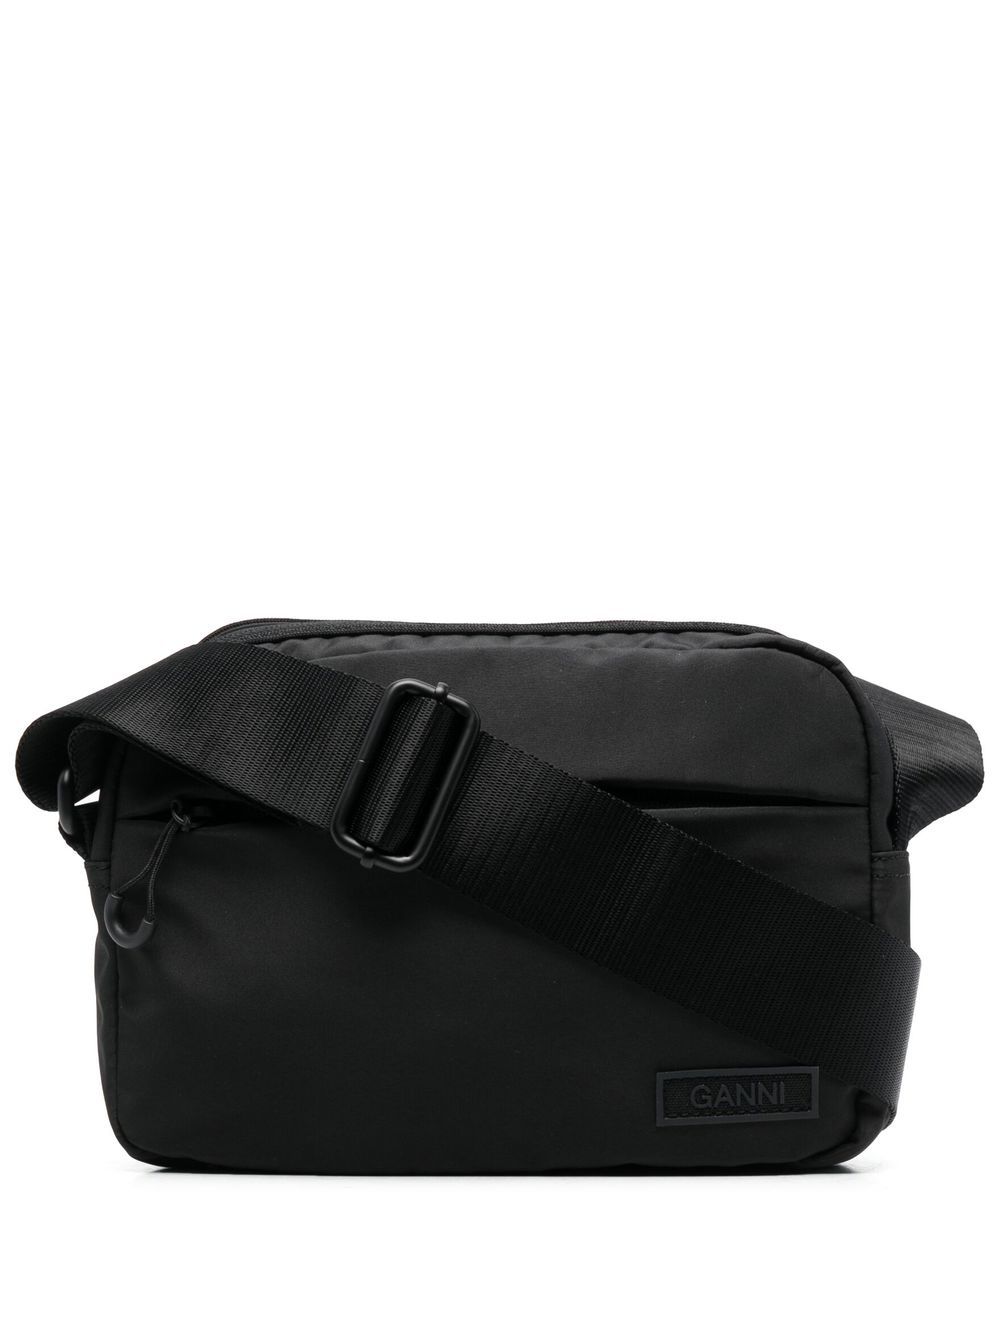 GANNI logo-patch satchel bag - Black